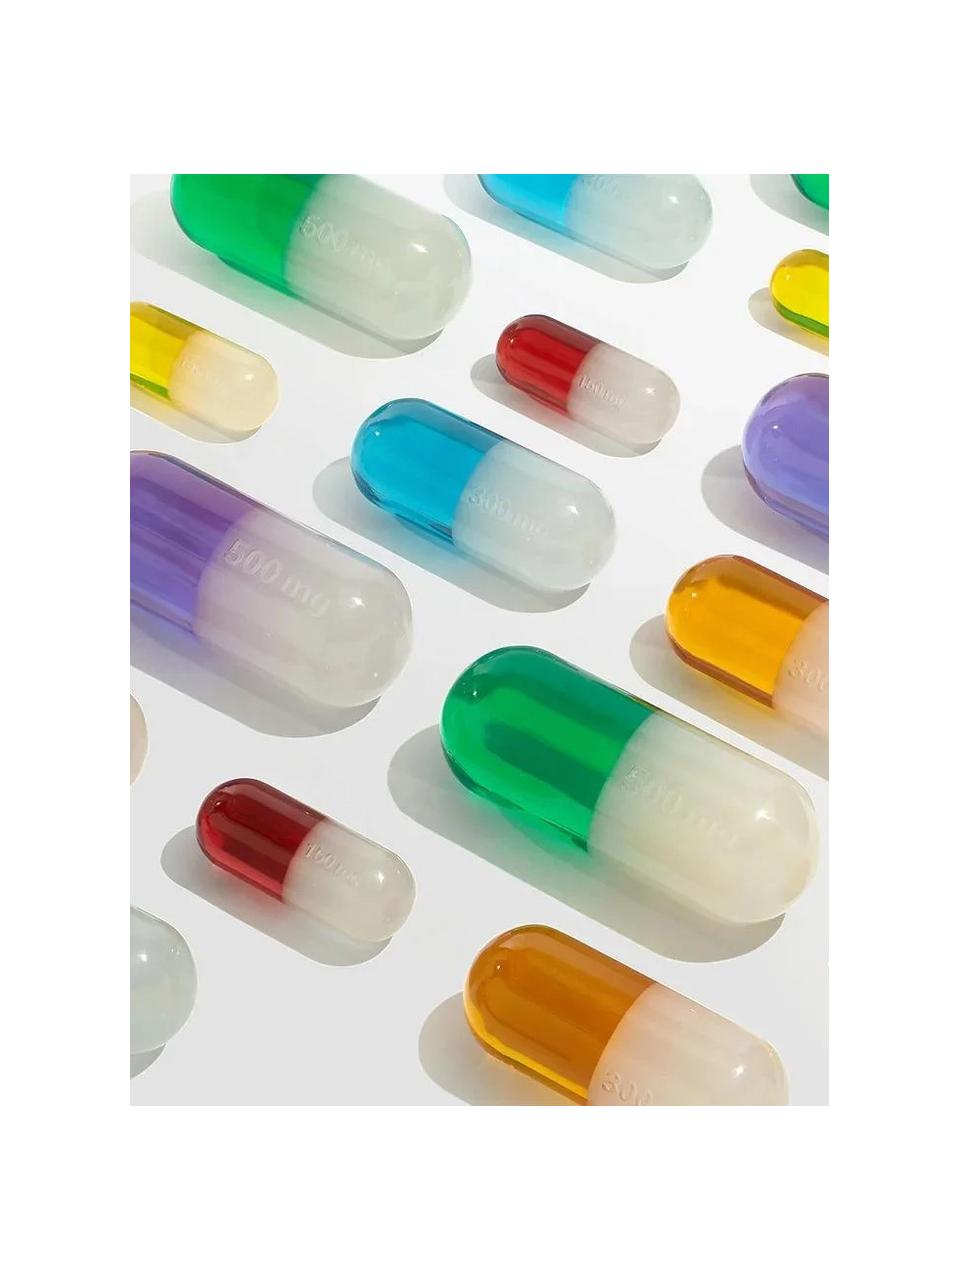 Dekoracja Pill, Poliakryl polerowany, Biały, lawendowy, S 29 x W 13 cm